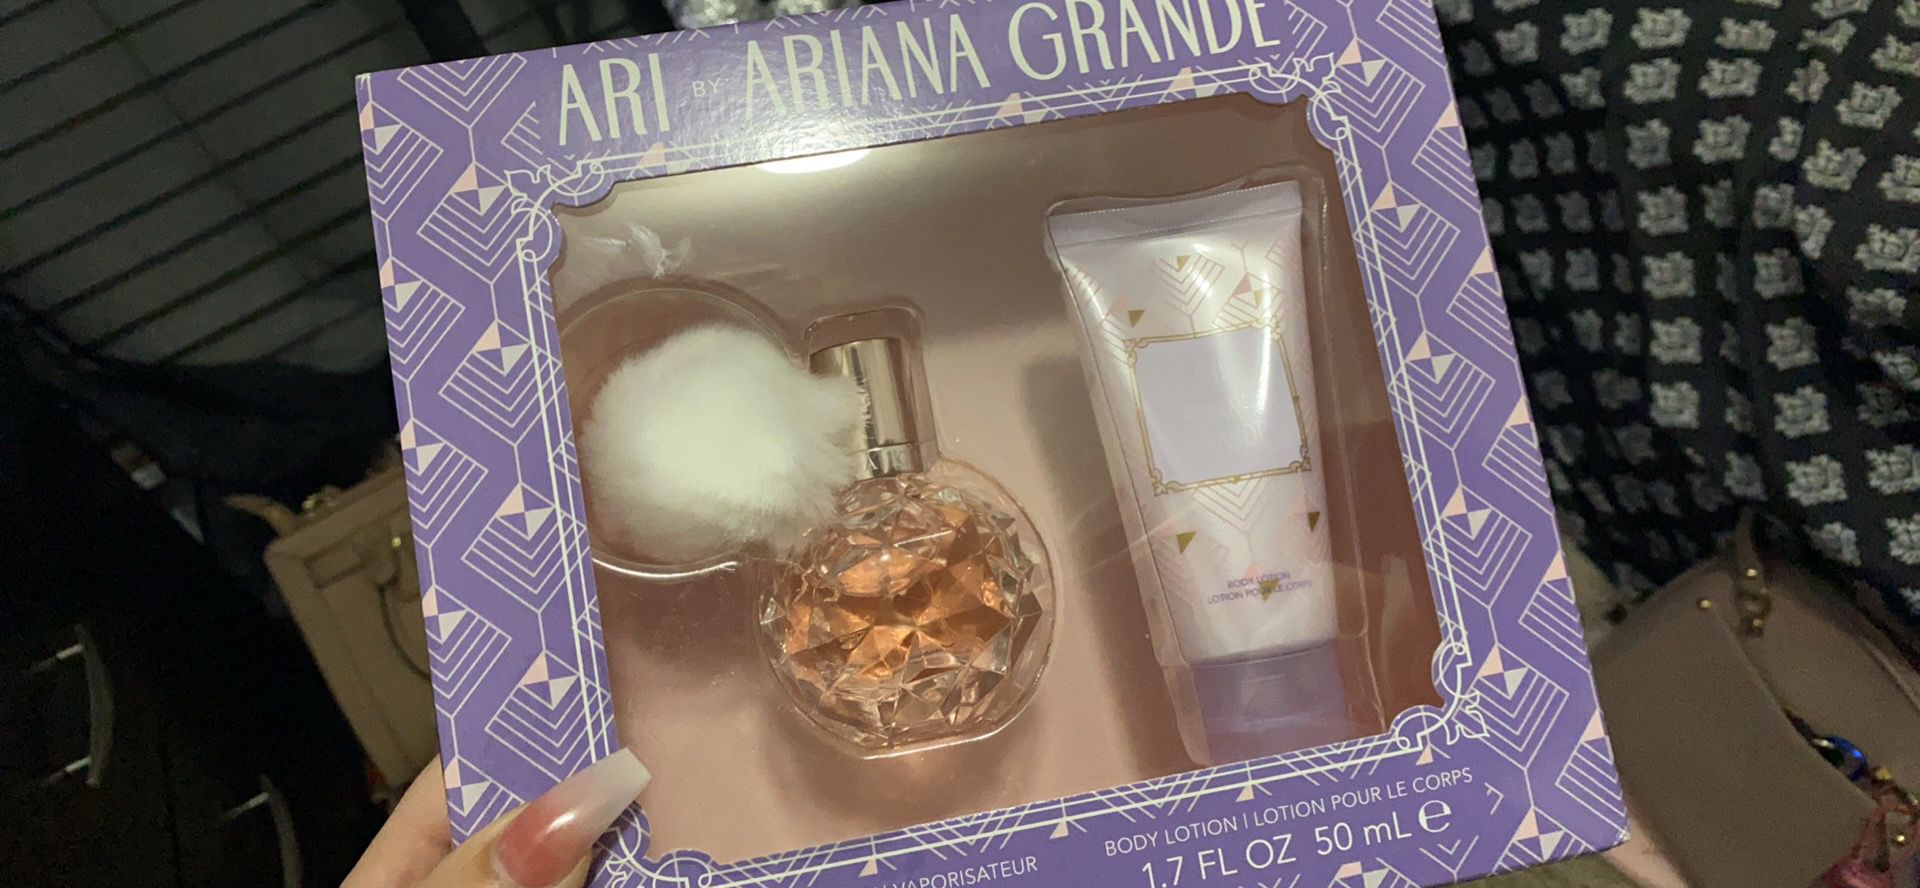 Ariana grande perfume